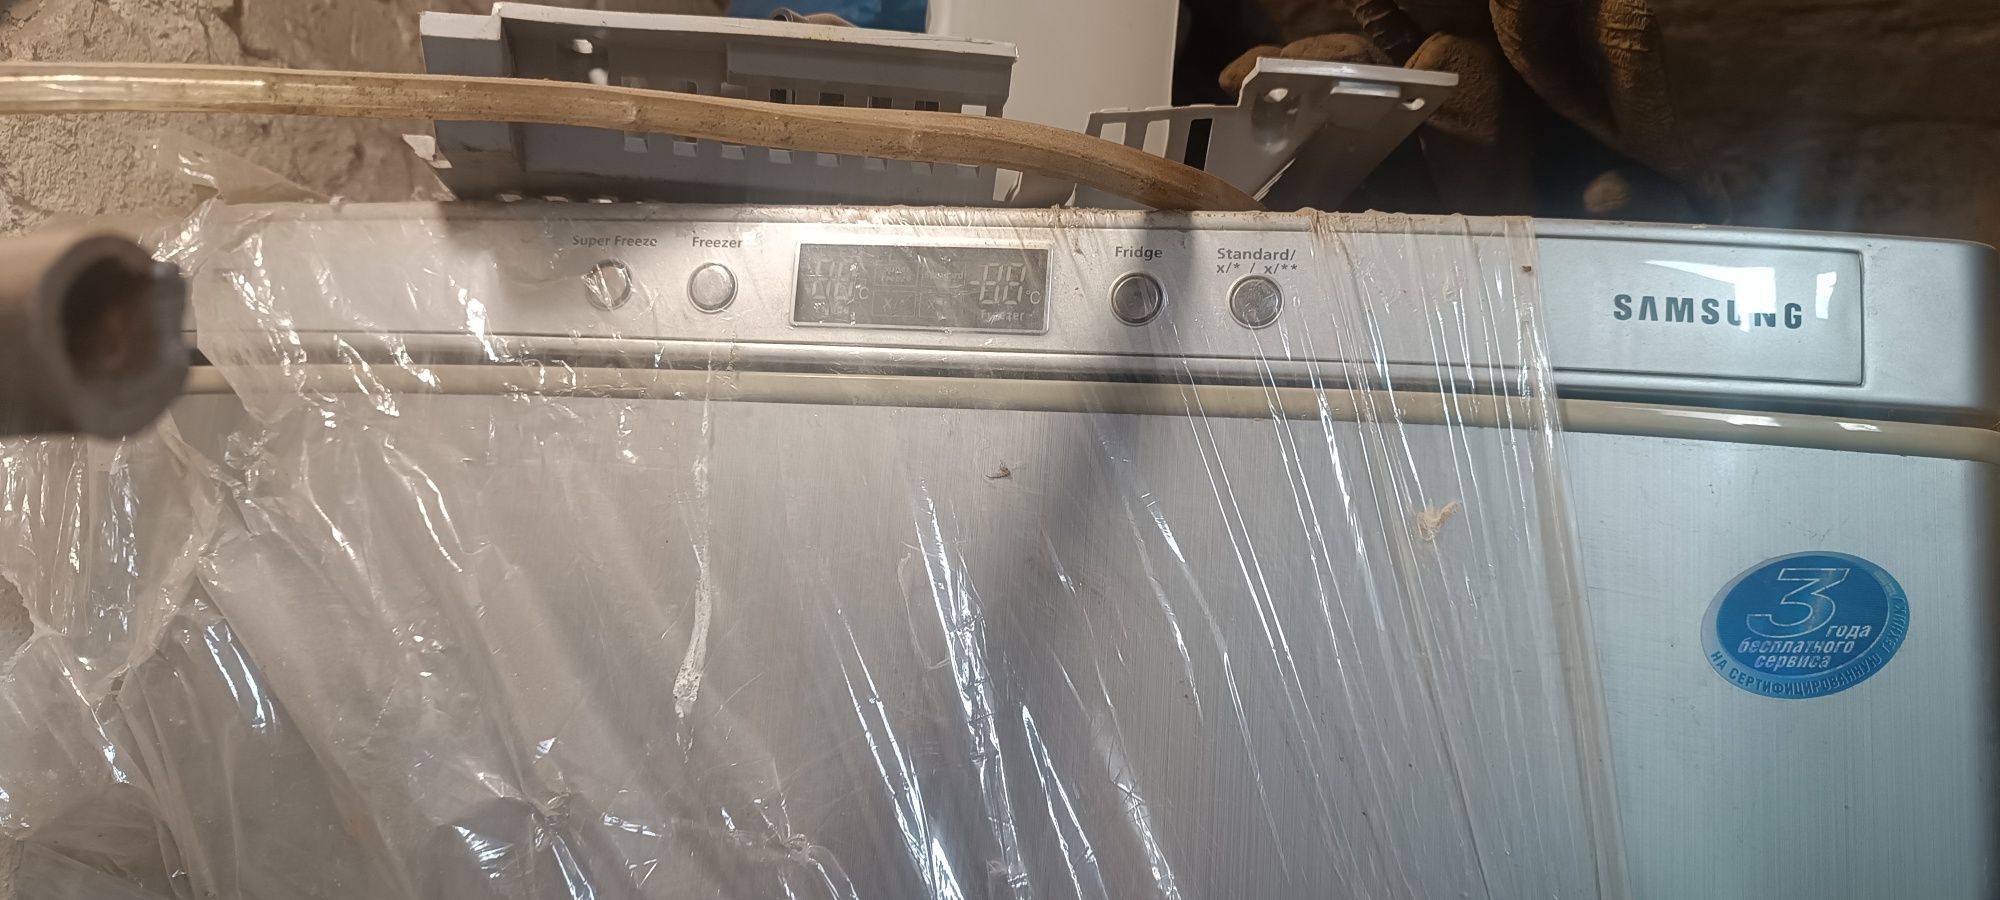 Продам холодильник Самсунг под ремонт